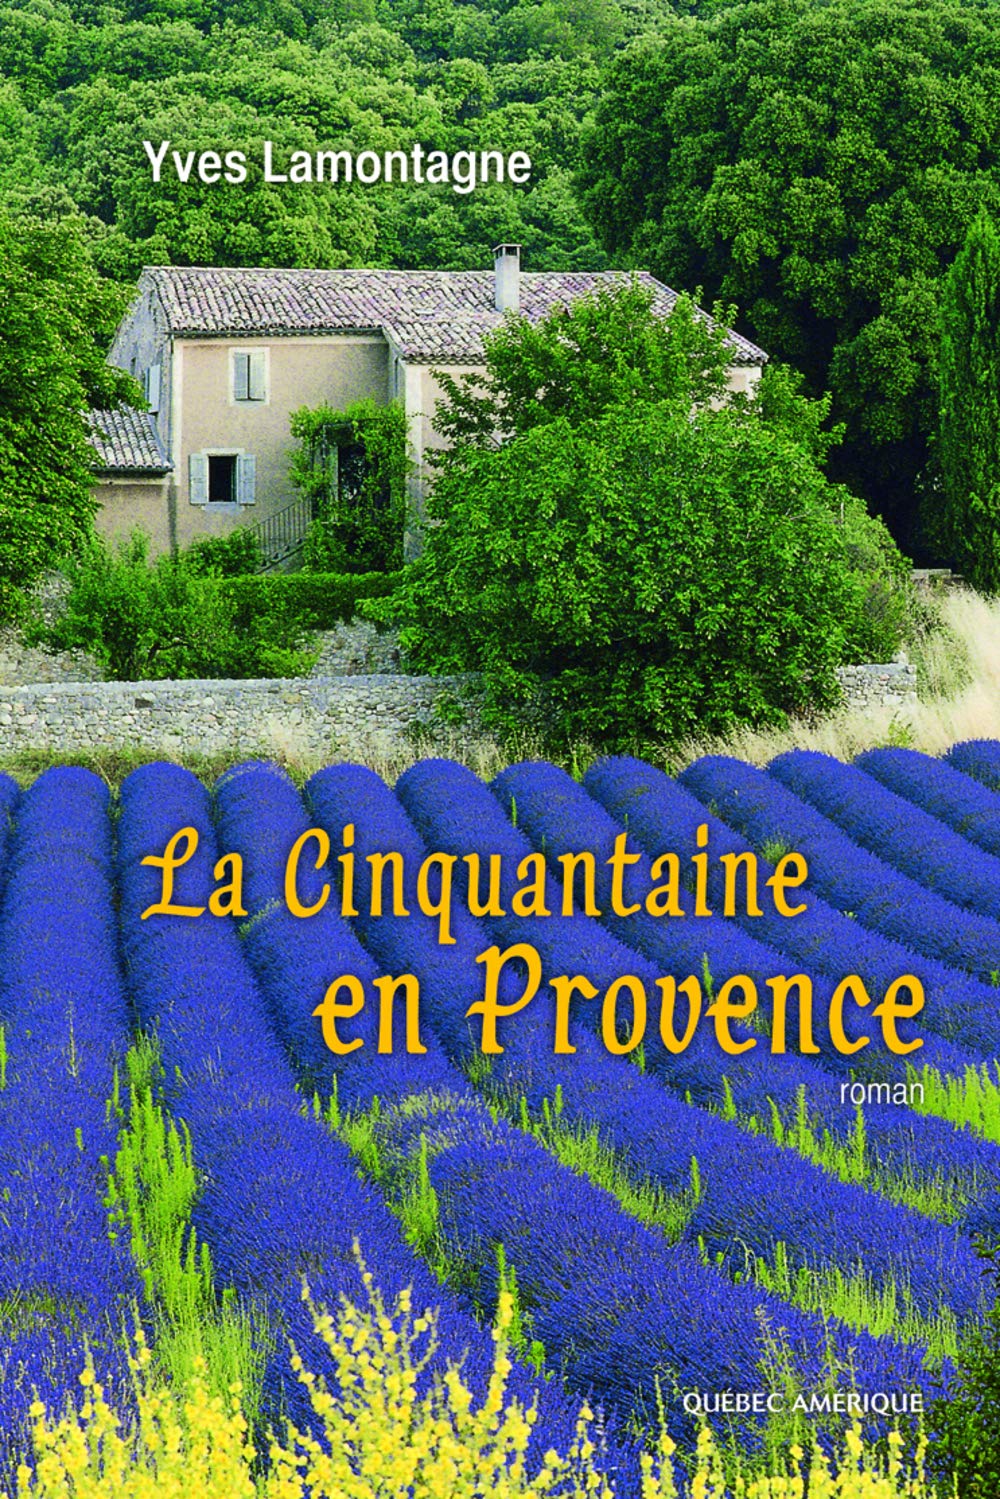 La cinquantaine en Provence - Yves lamontagne